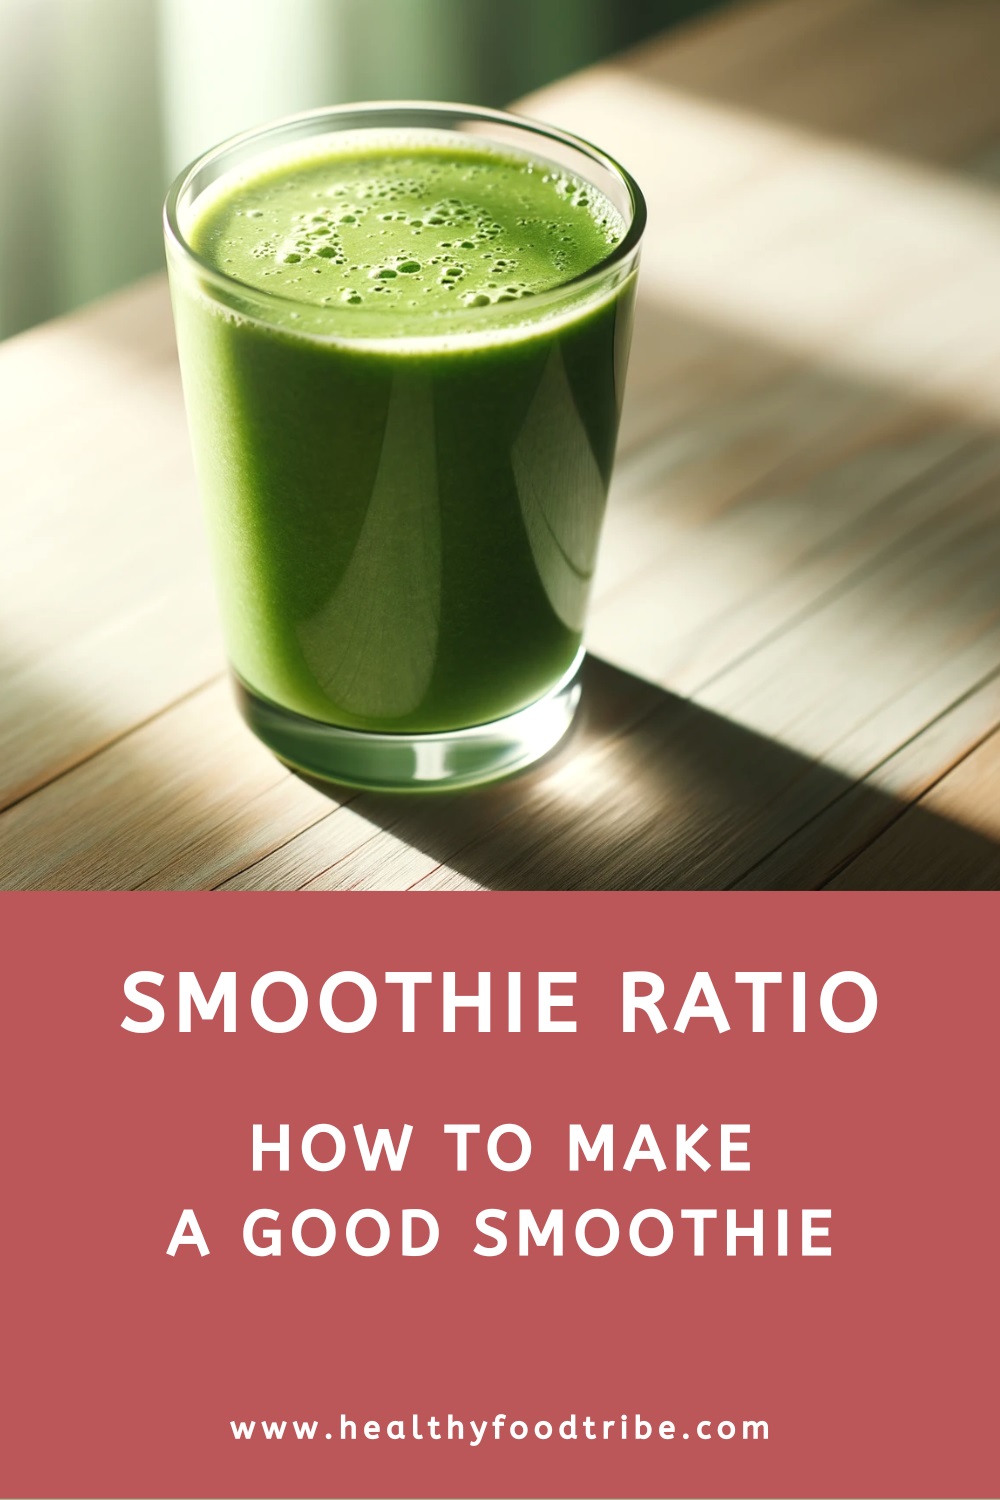 Smoothie ratio (how to make a good smoothie)